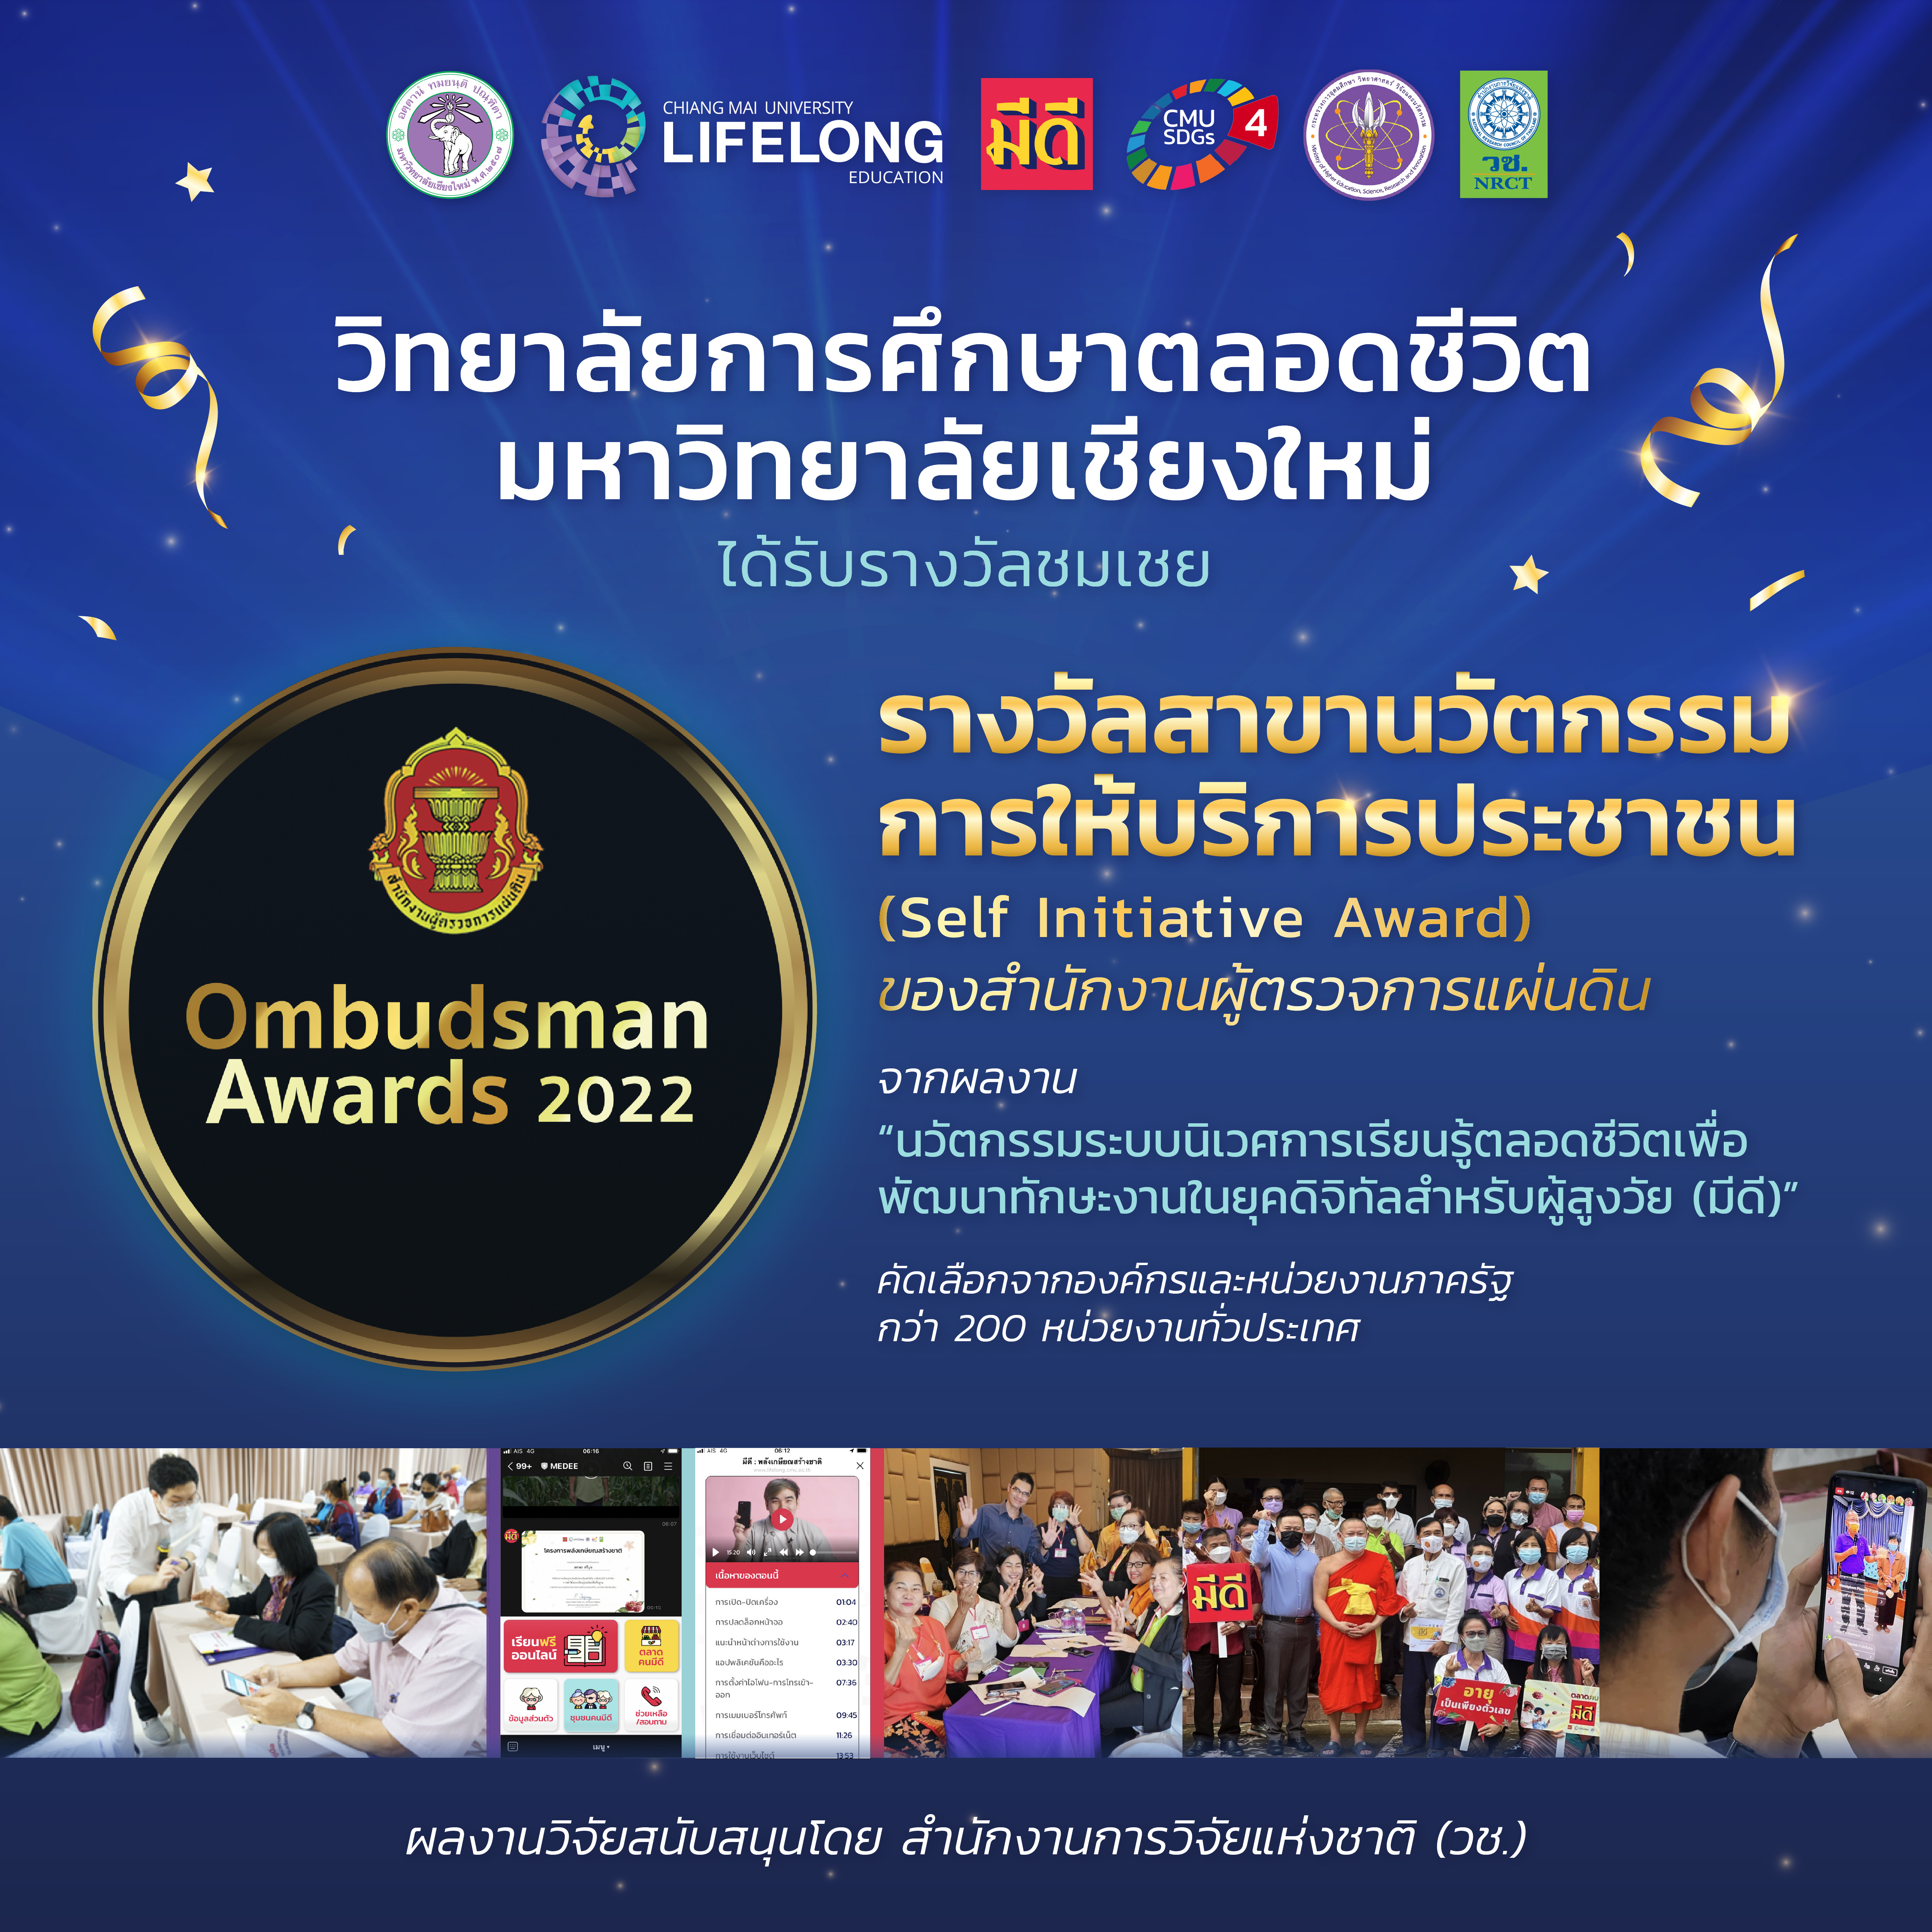 วิทยาลัยการศึกษาตลอดชีวิต คว้ารางวัลชมเชย Ombudsman Awards ประจําปี 2565 “สาขาองค์กรดีเด่นด้านนวัตกรรมการให้บริการประชาชน (Self Initiative Award)”